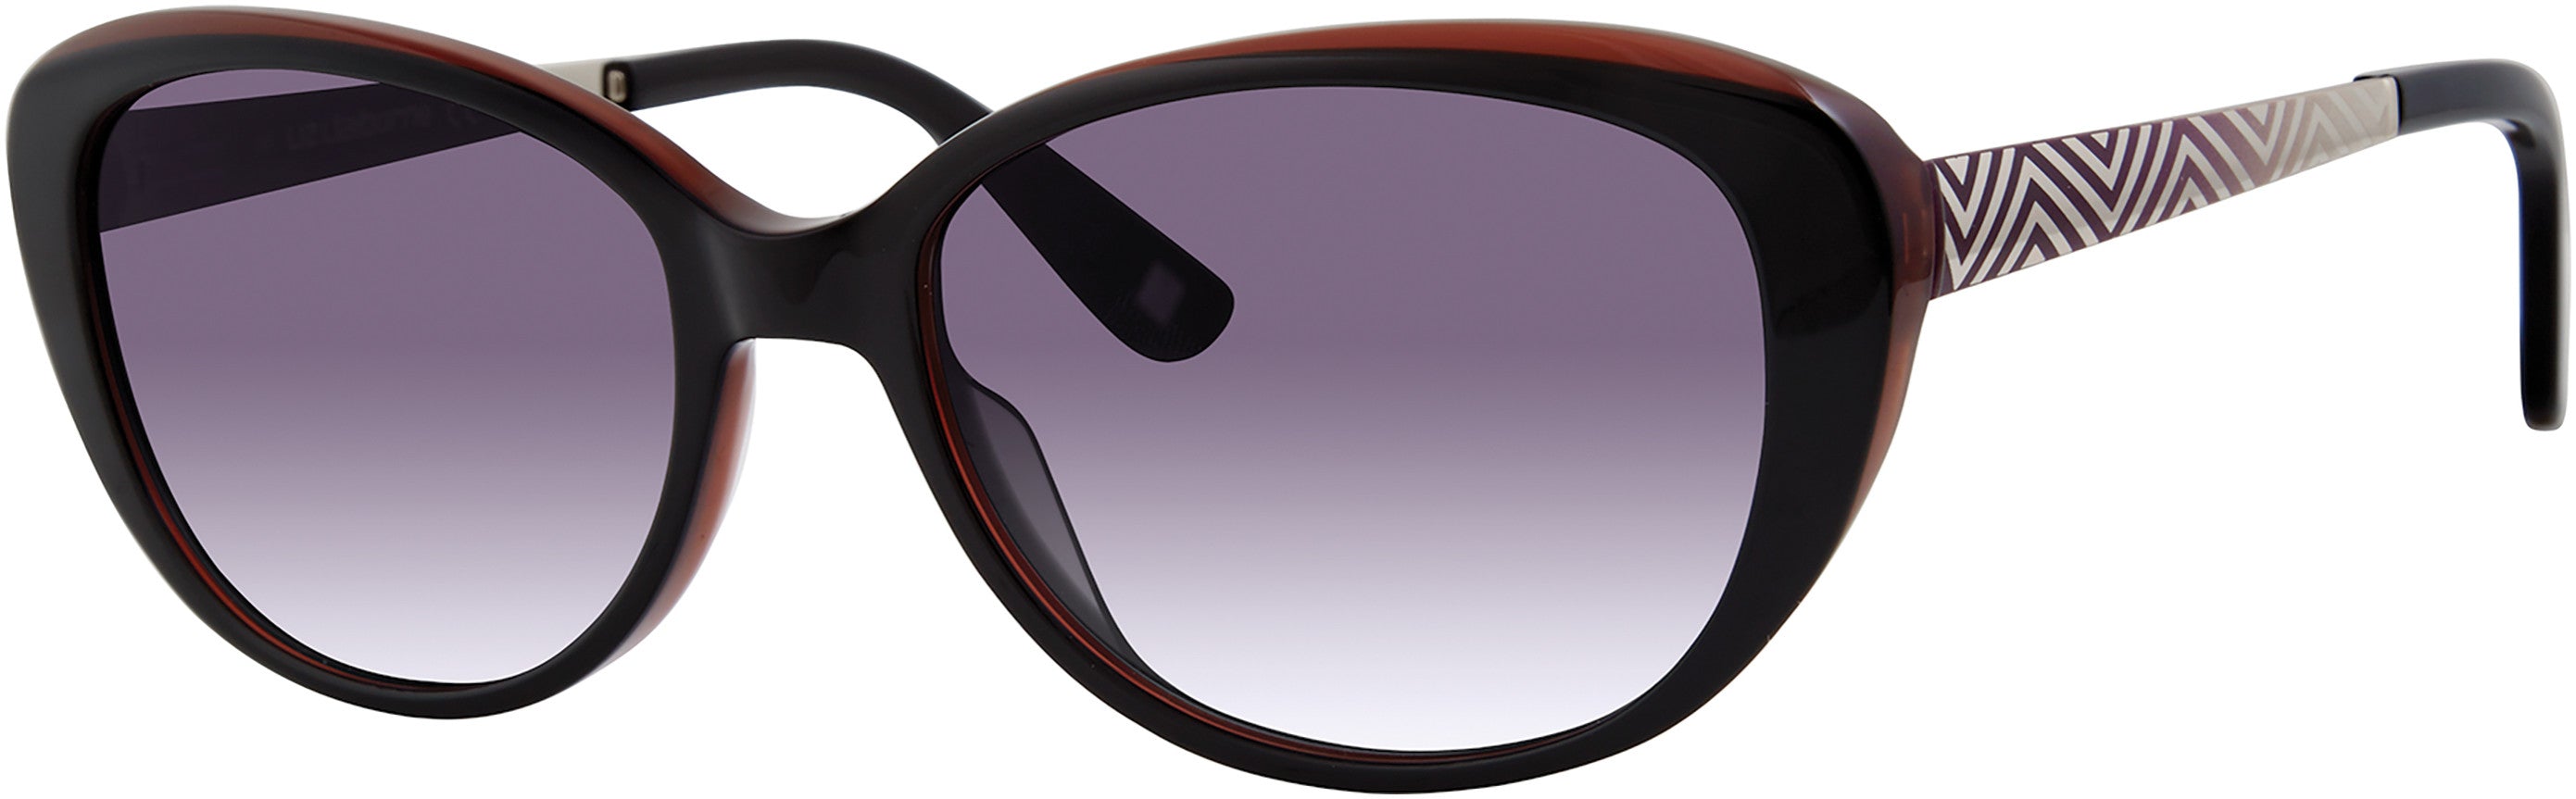  Liz Claiborne 571/S Oval Modified Sunglasses 0807-0807  Black (9O Dark Gray Gradient)